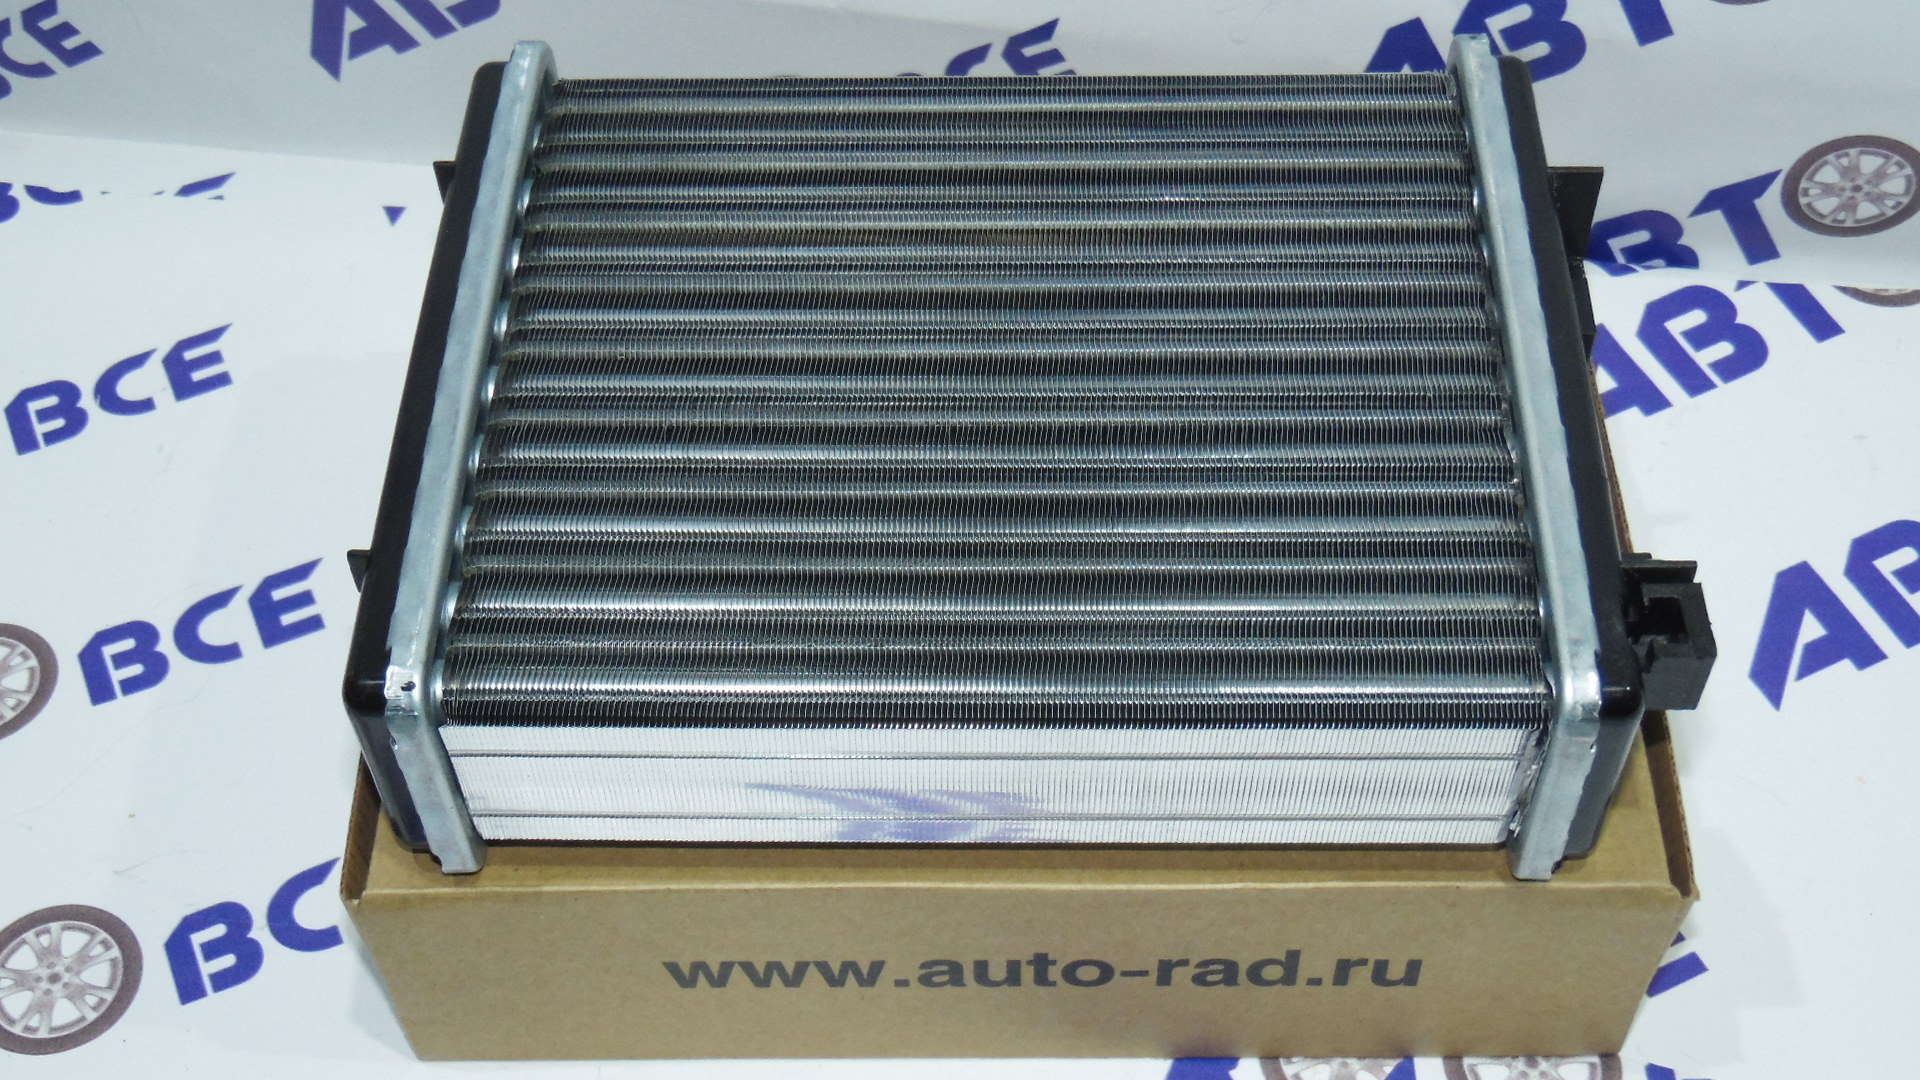 Радиатор отопителя (печки) ВАЗ-2101-2103-2106 (алюминиевый.-узкий) Авто-Радиатор